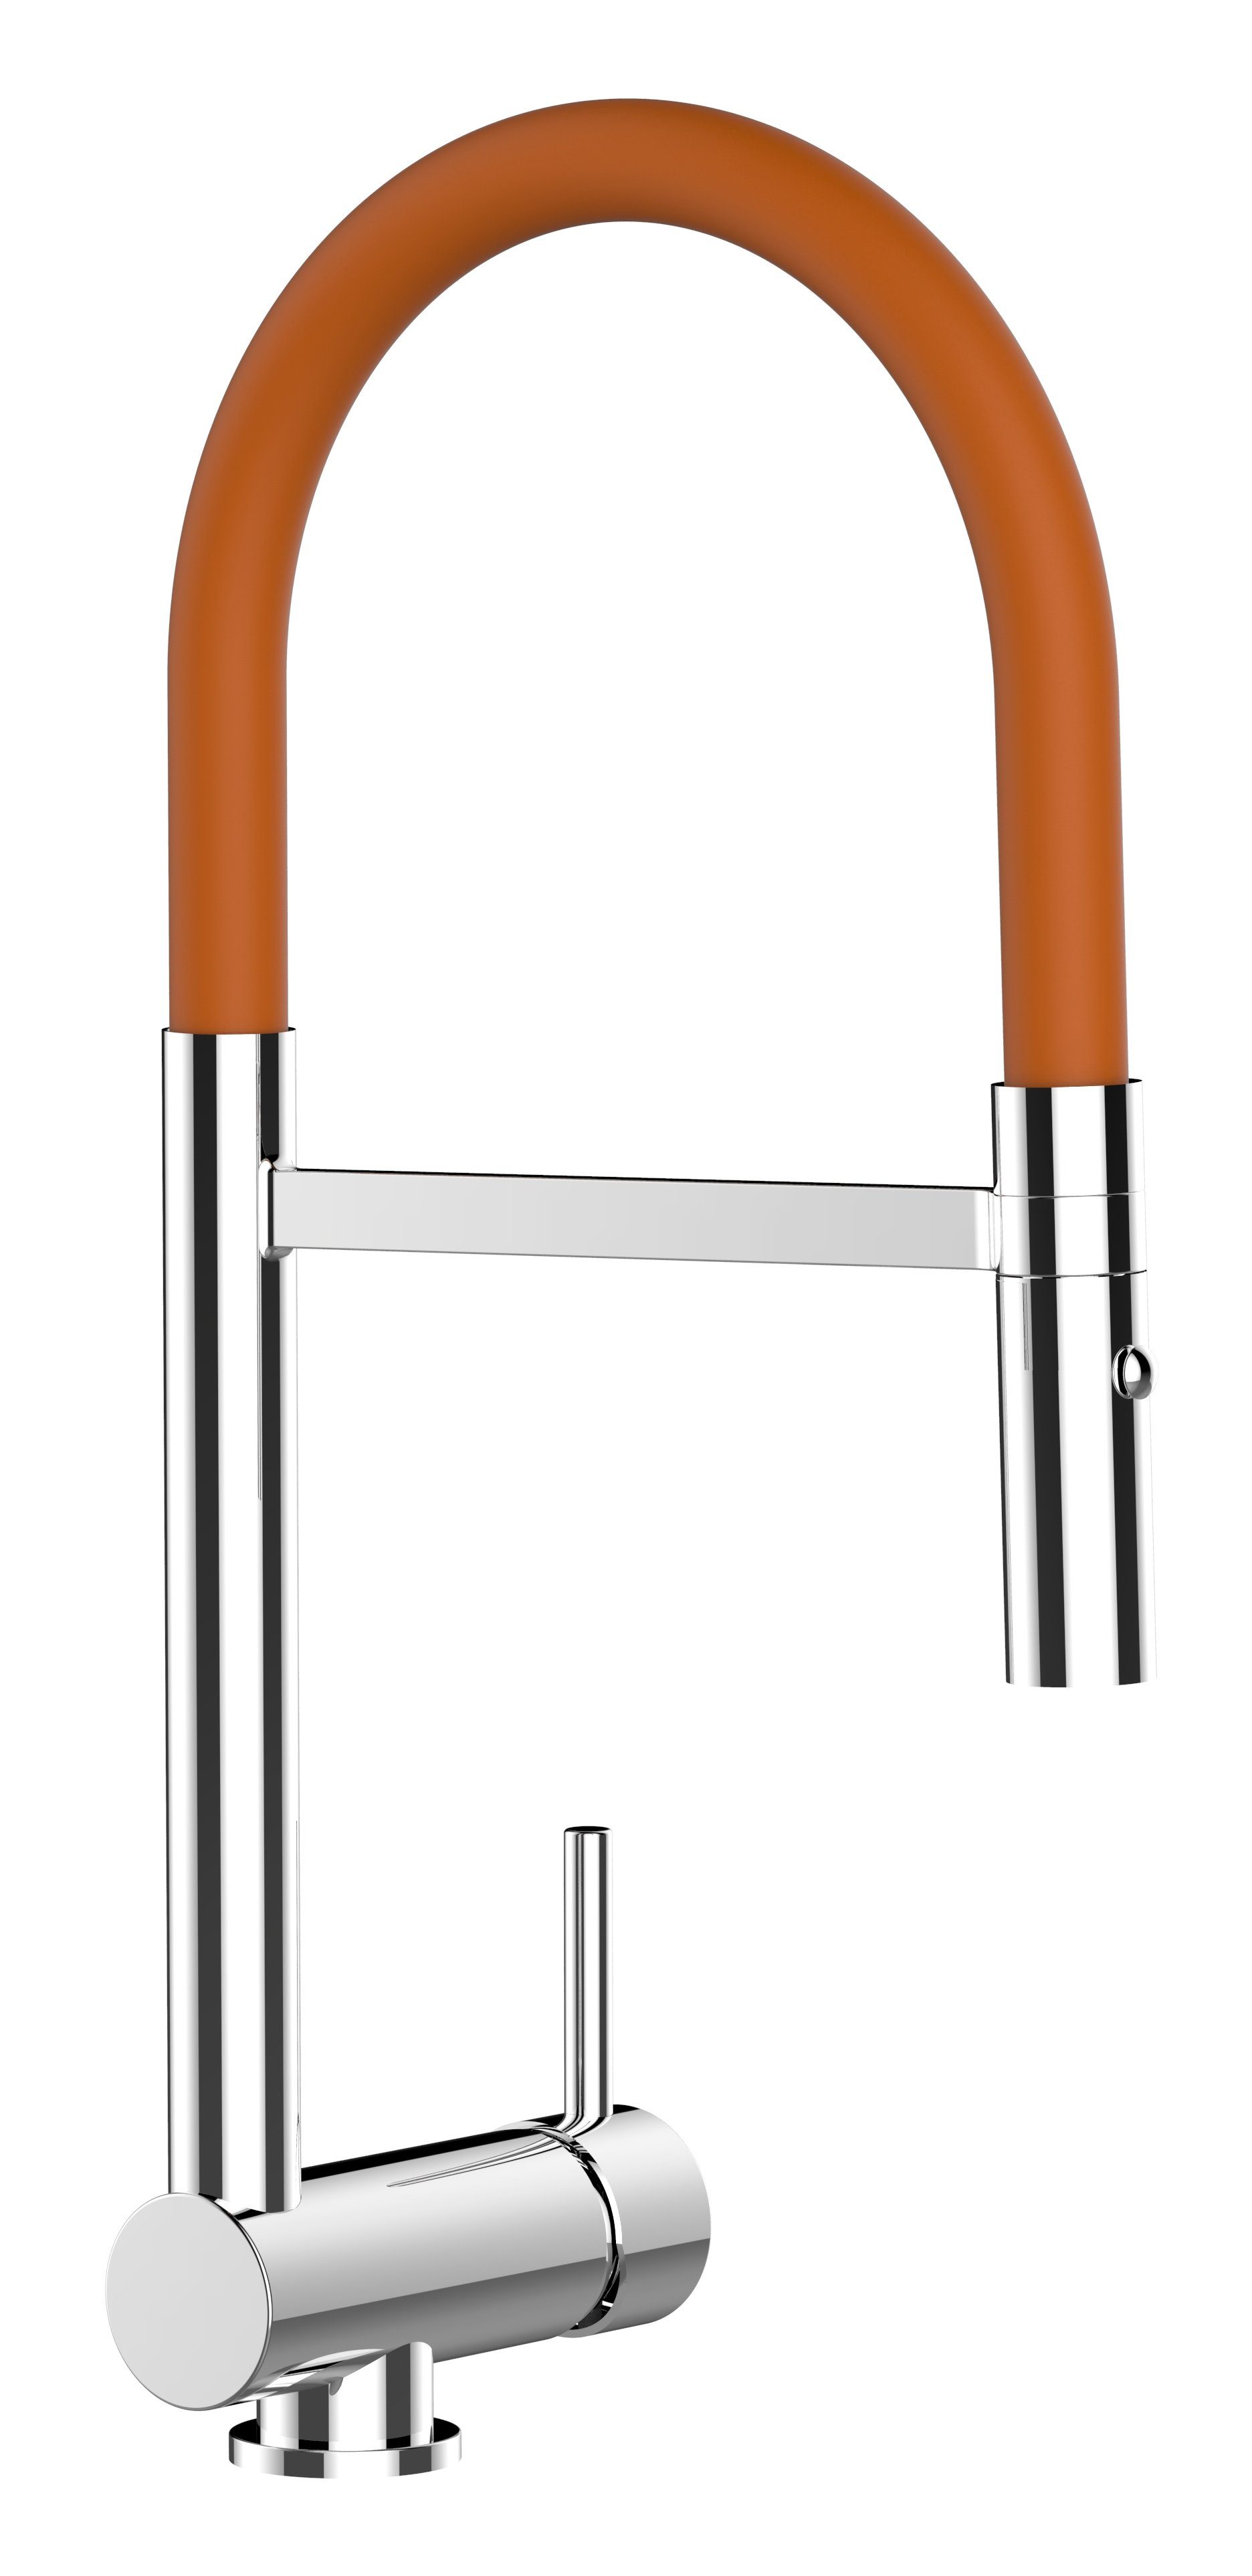 VIZIO Küchenarmatur Unterfenster Armatur 6 cm mit abnehmbarer 2 strahl Brause Hochdruck, Messing verchromt, abgeschwenkt nur 60mm hoch, Sicherungstaste gegen unbeabsichtigtes Abkippen Orange